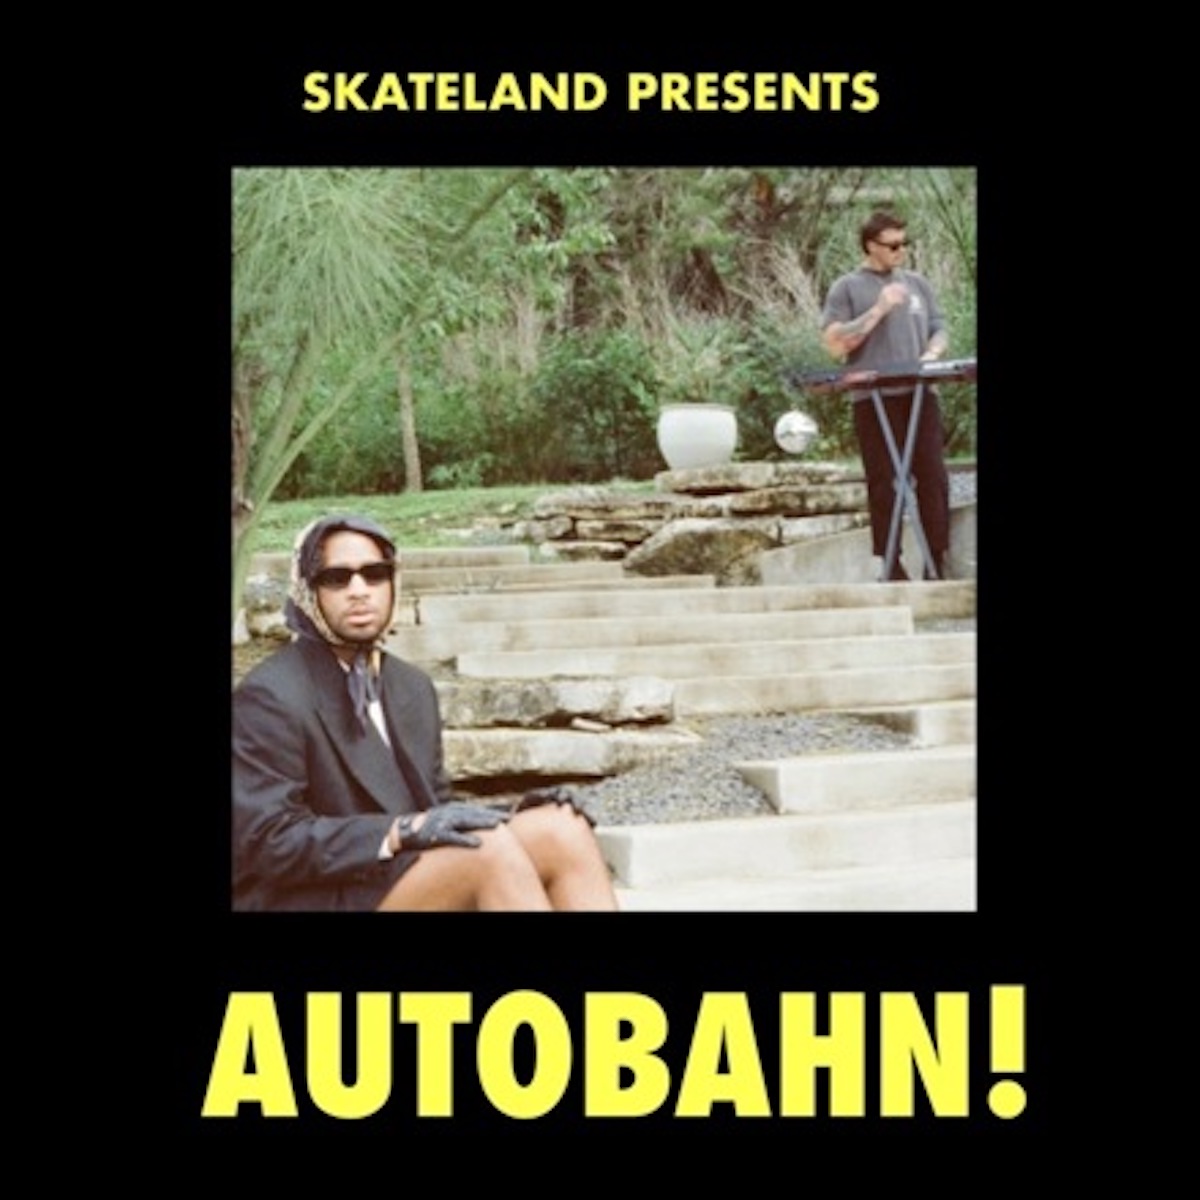 LISTEN: “Autobahn!” by Skateland